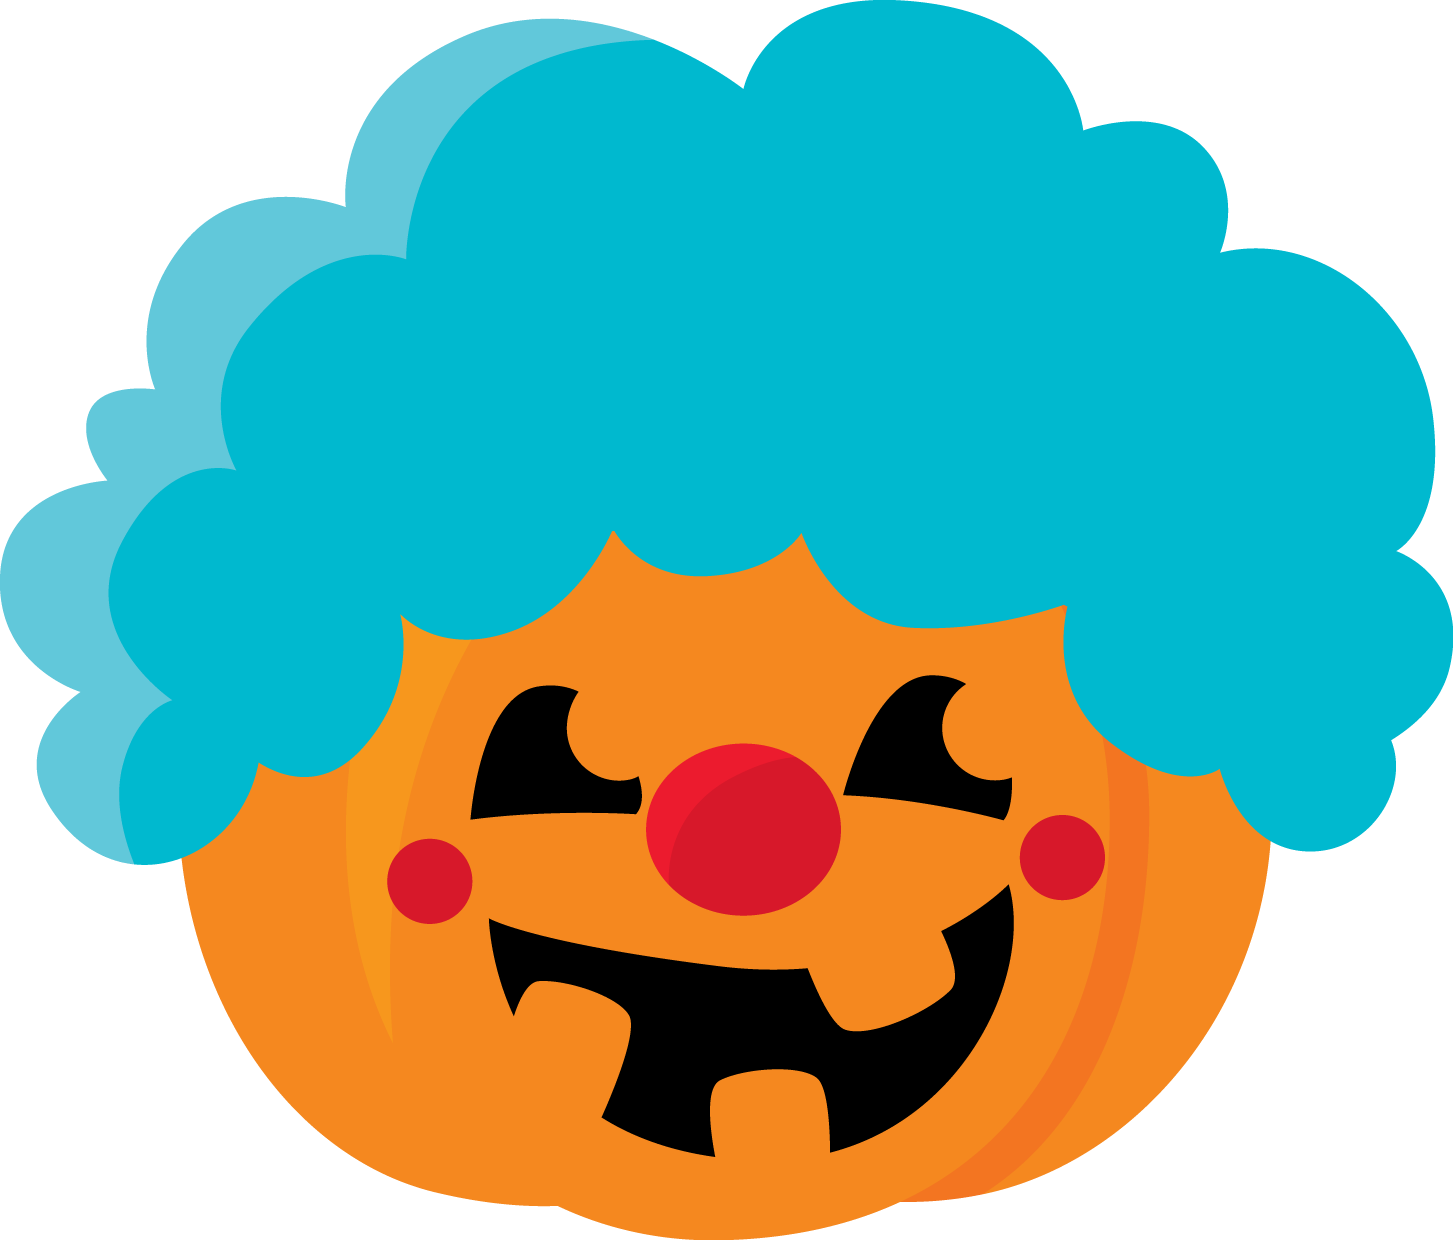 Clown Pumpkin Halloween Graphic